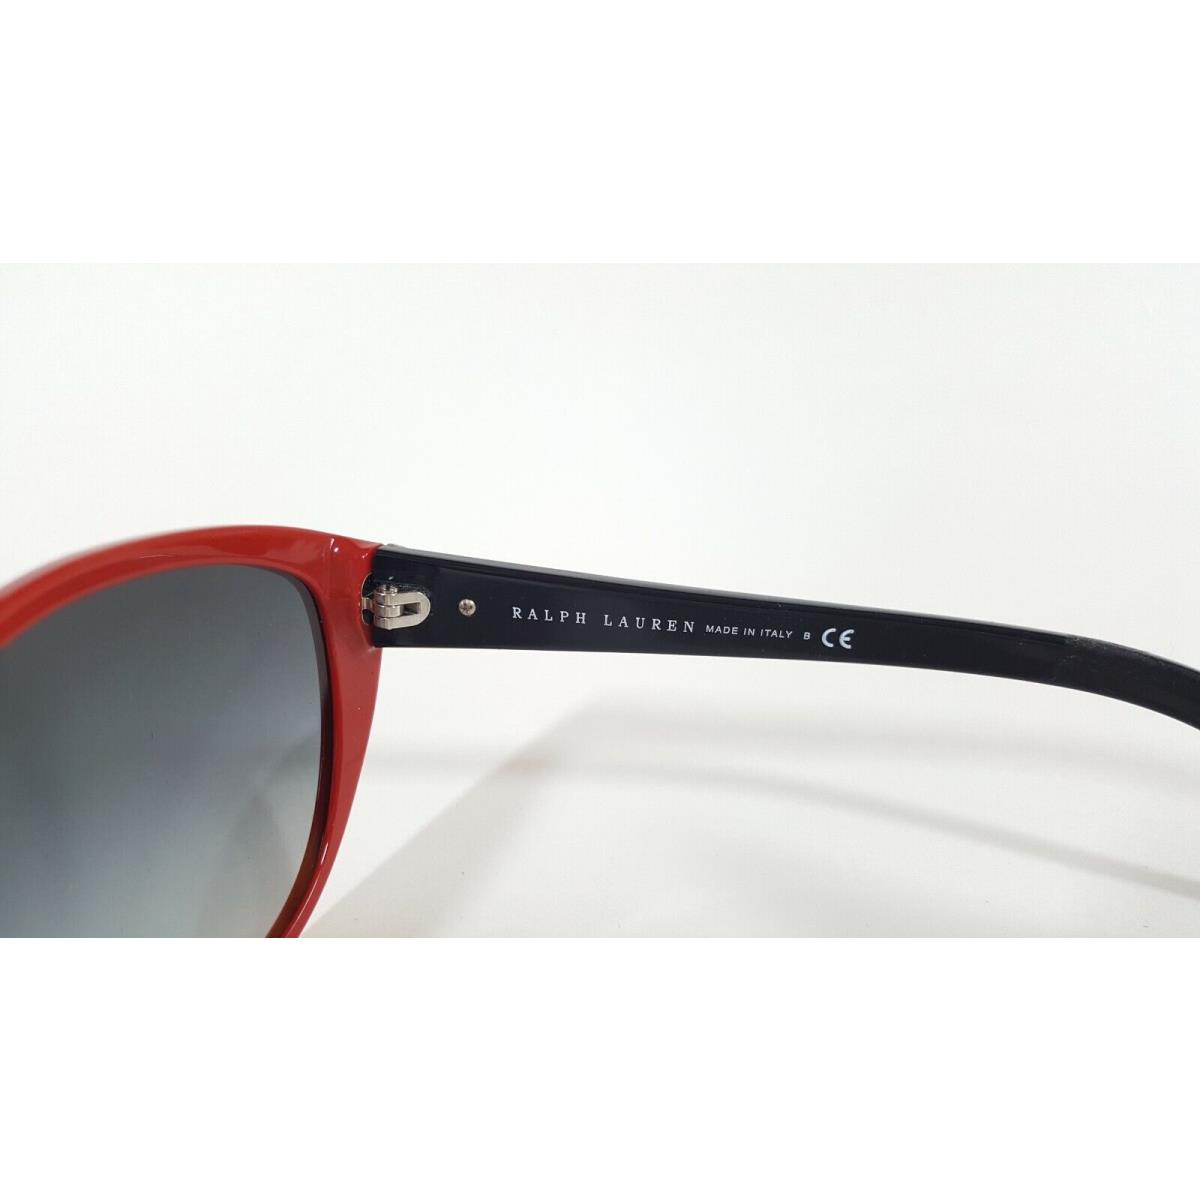 Ralph Lauren sunglasses  - Red Frame, Gray Lens